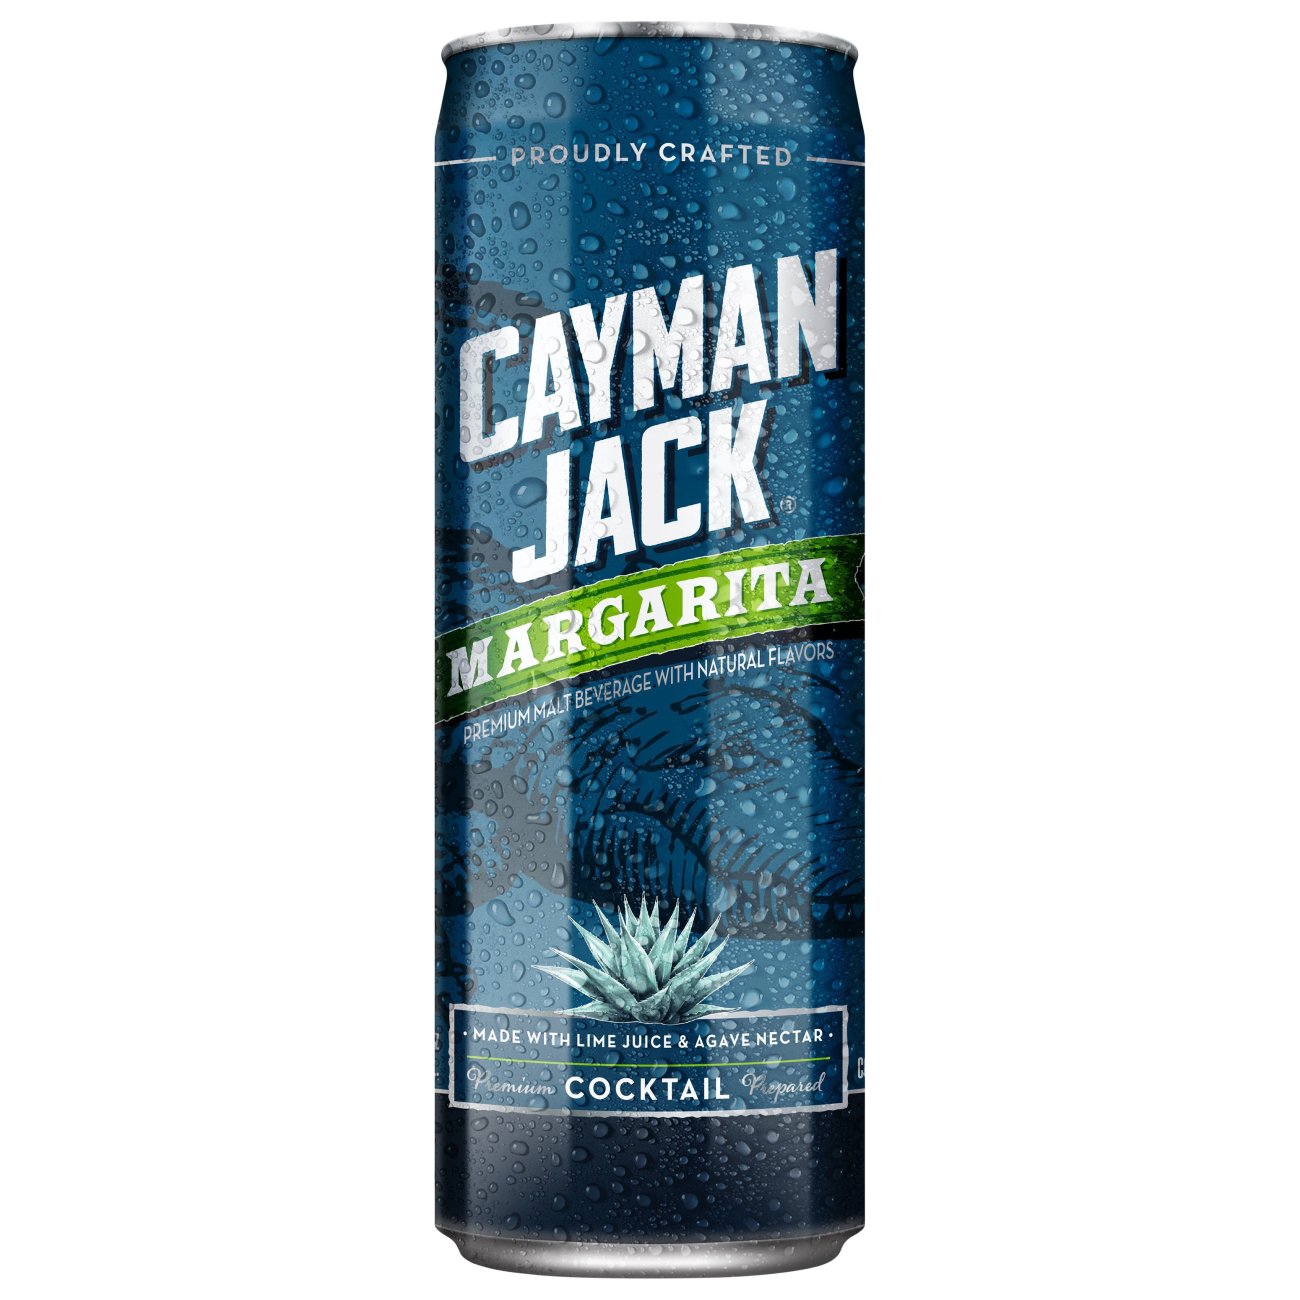 Cayman Jack Margarita - Shop Malt Beverages & Coolers at H-E-B